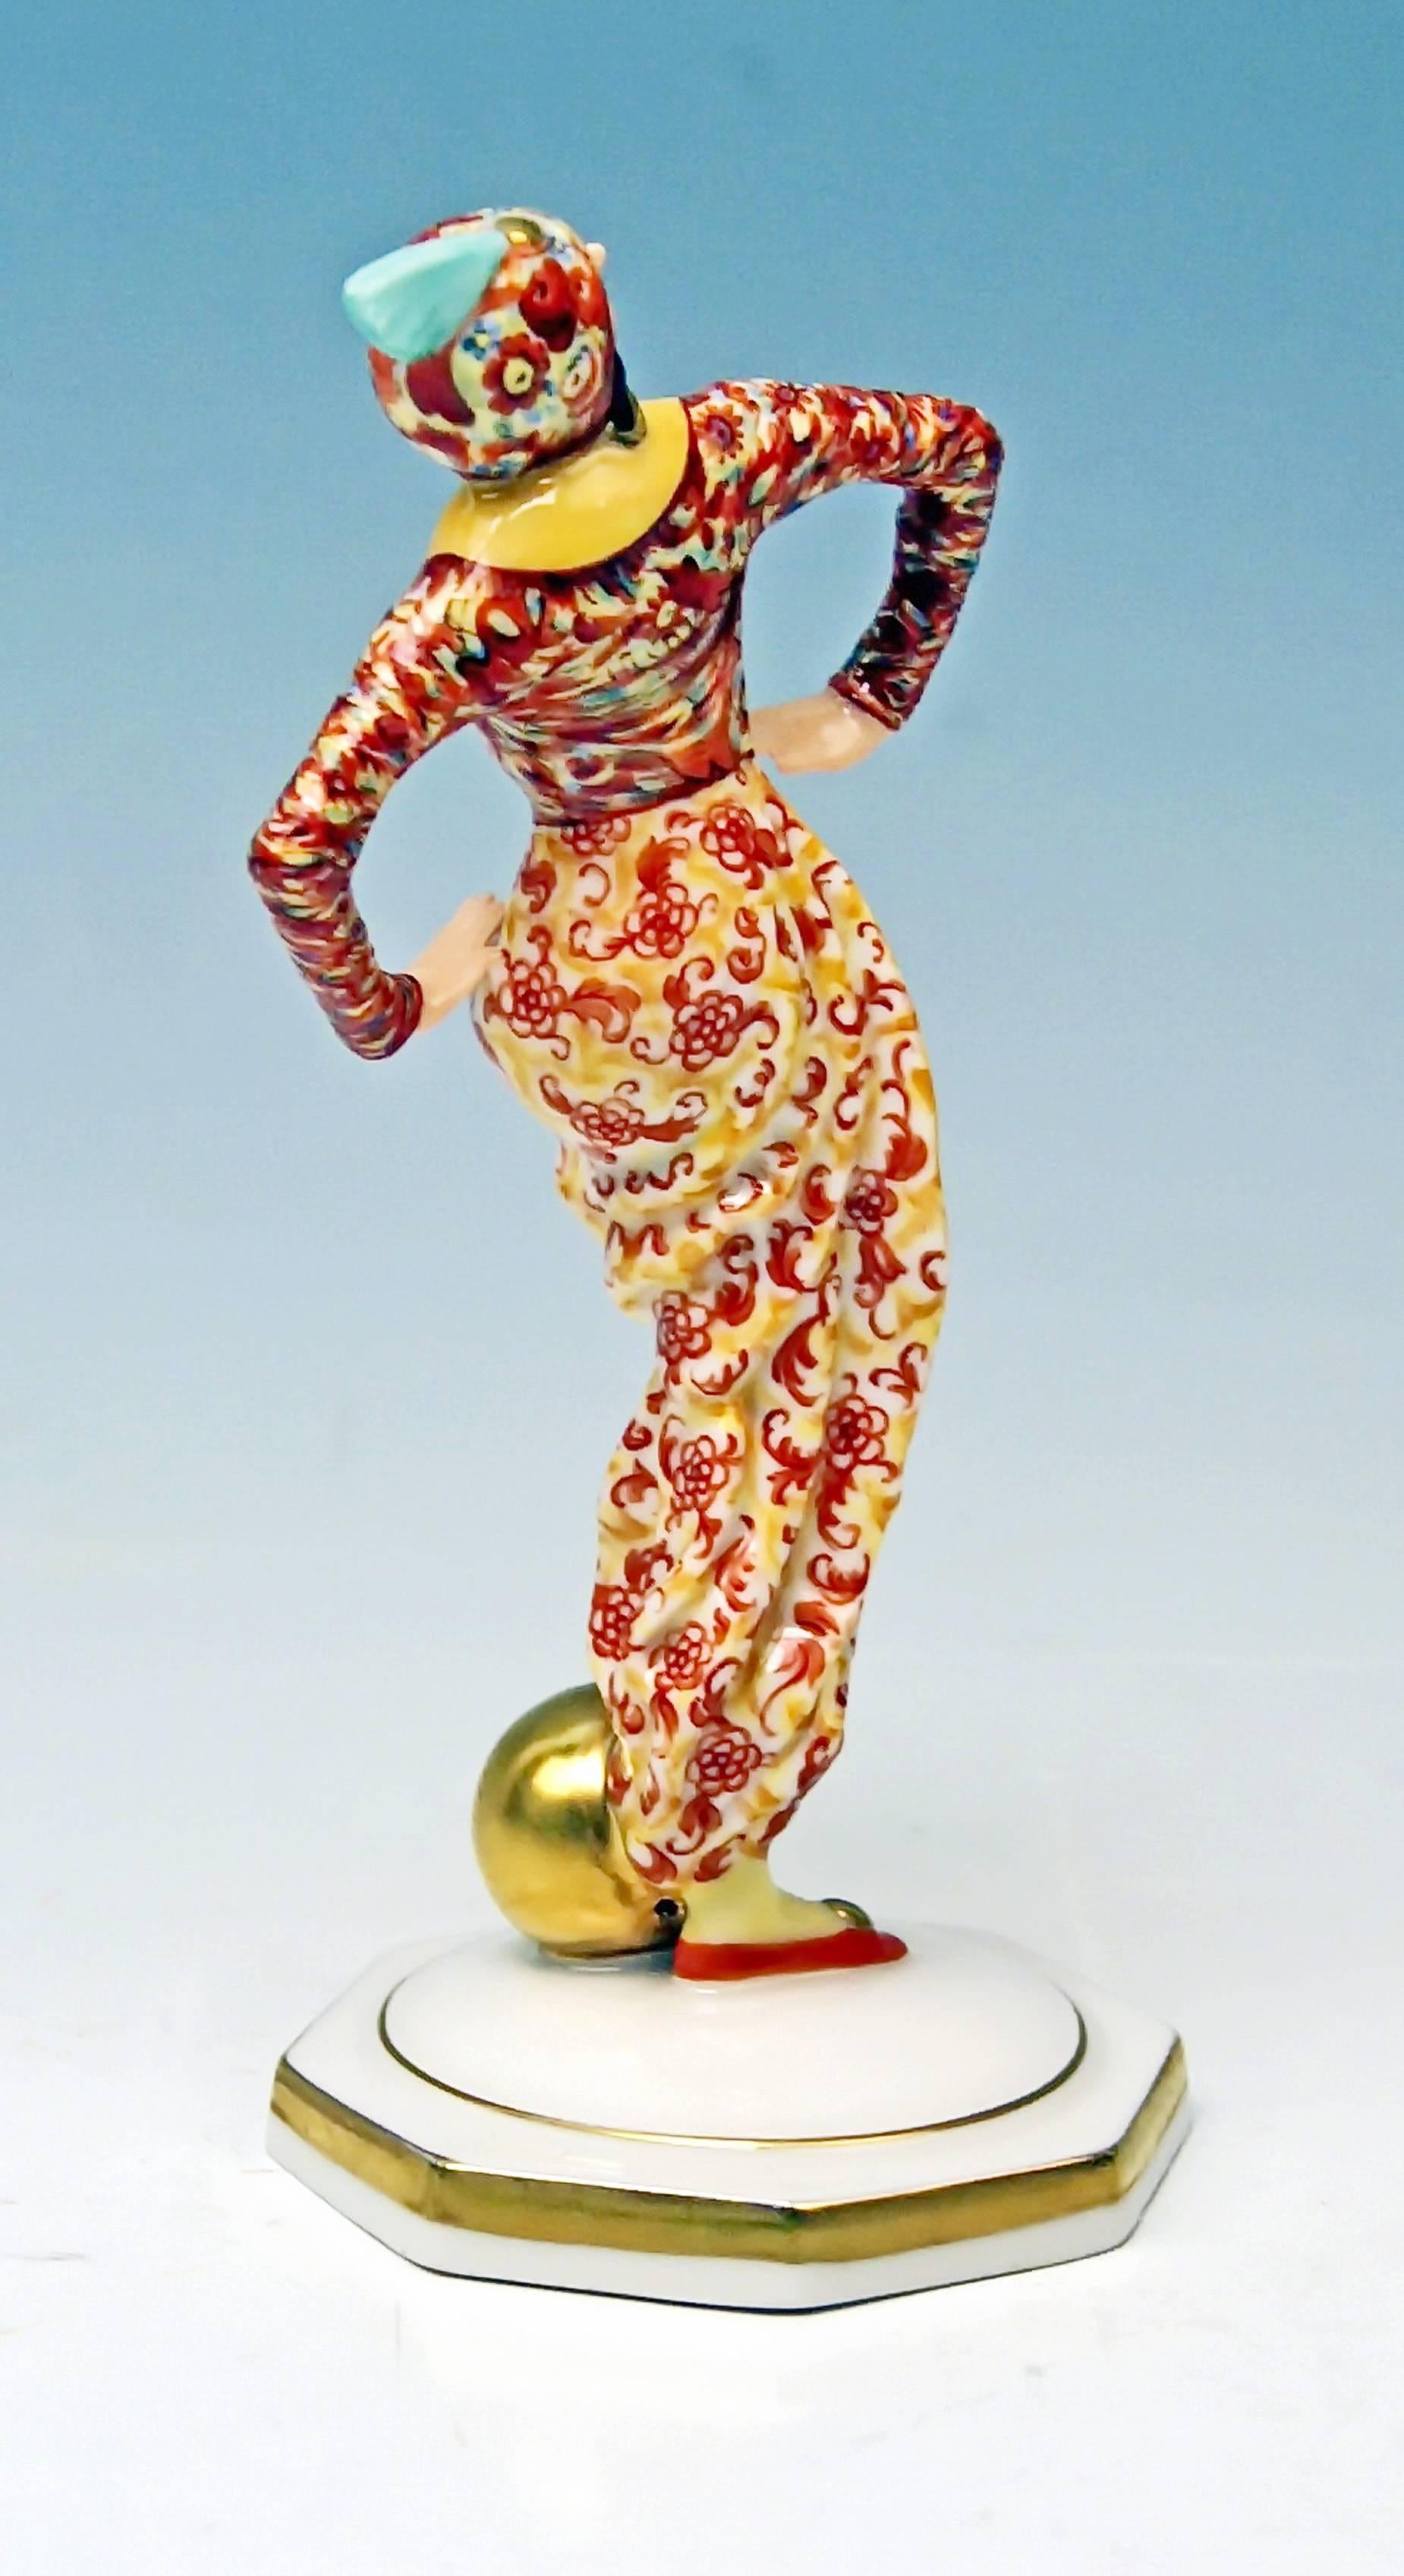 Glazed Hutschenreuther Oriental Lady Dancer Constantin Holzer-Defanti Germany 1926-1930